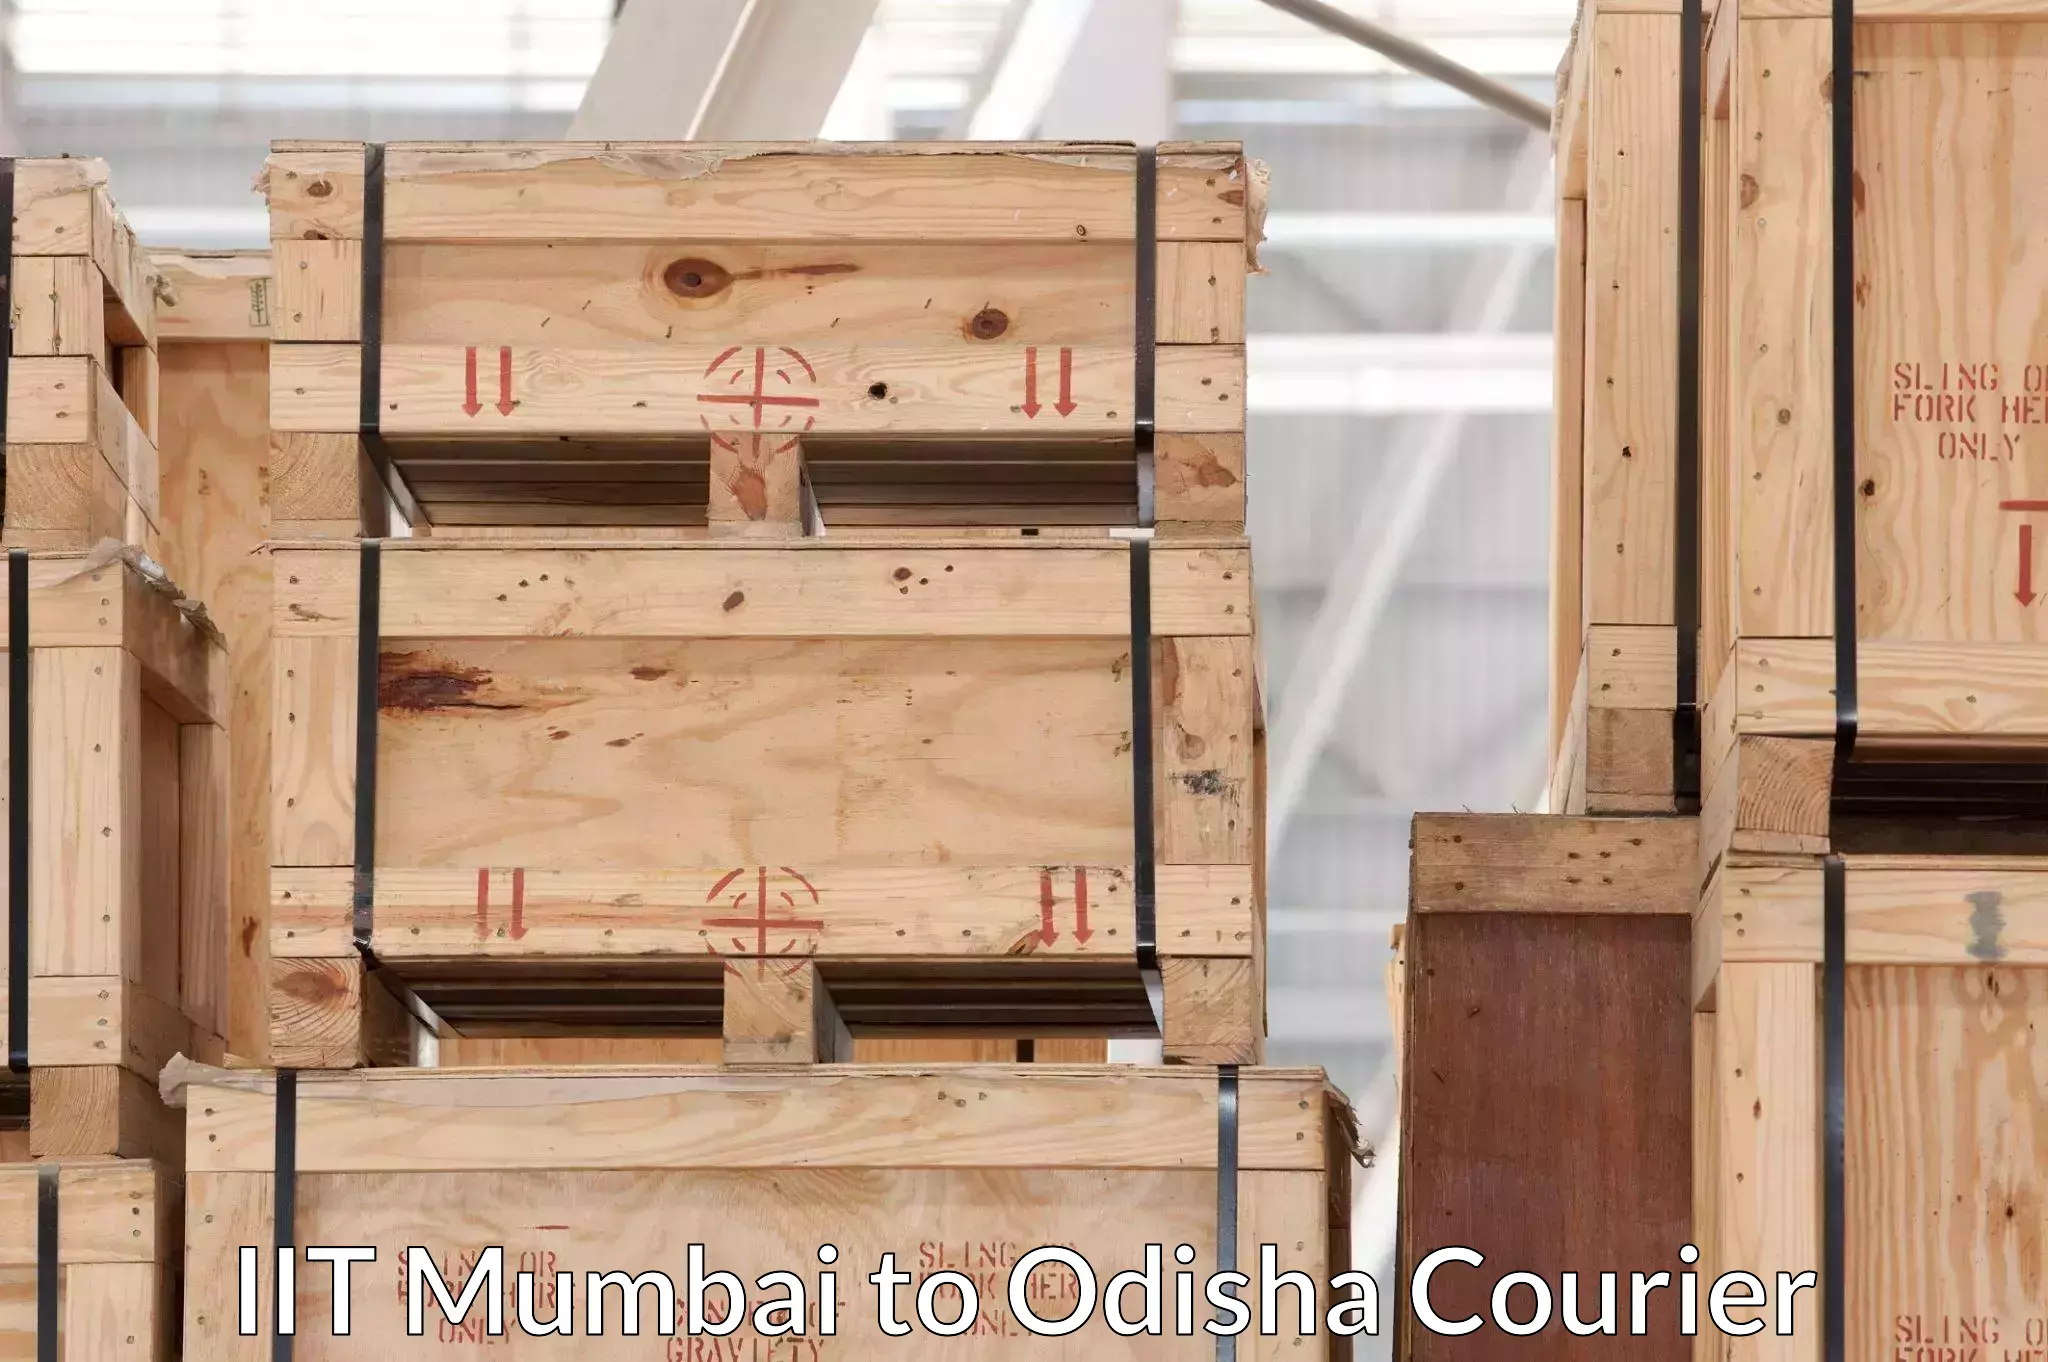 Expert goods movers IIT Mumbai to Kalahandi